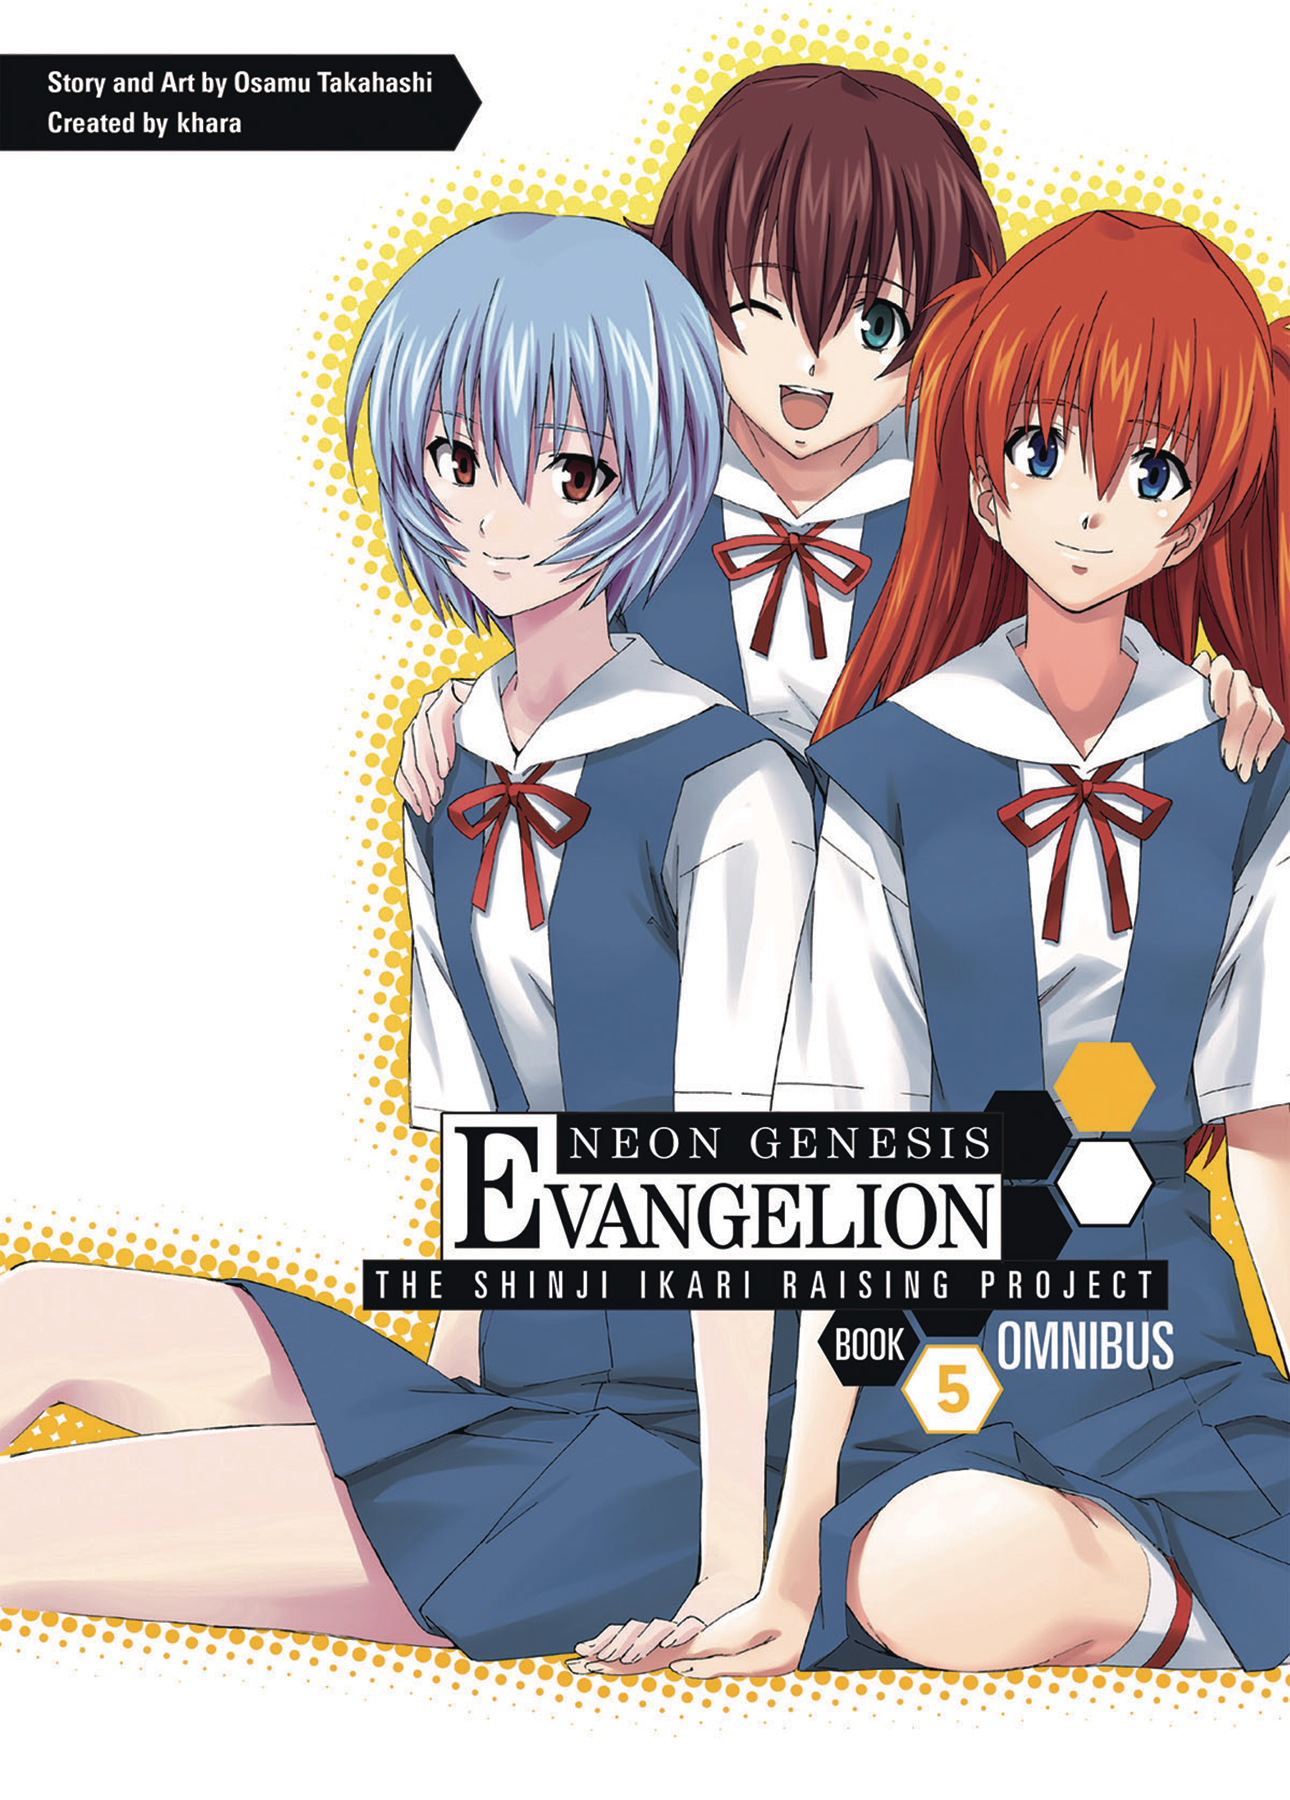 Neon Genesis Evangelion Shinji Ikari Raising Project Omnibus Manga Volume 5